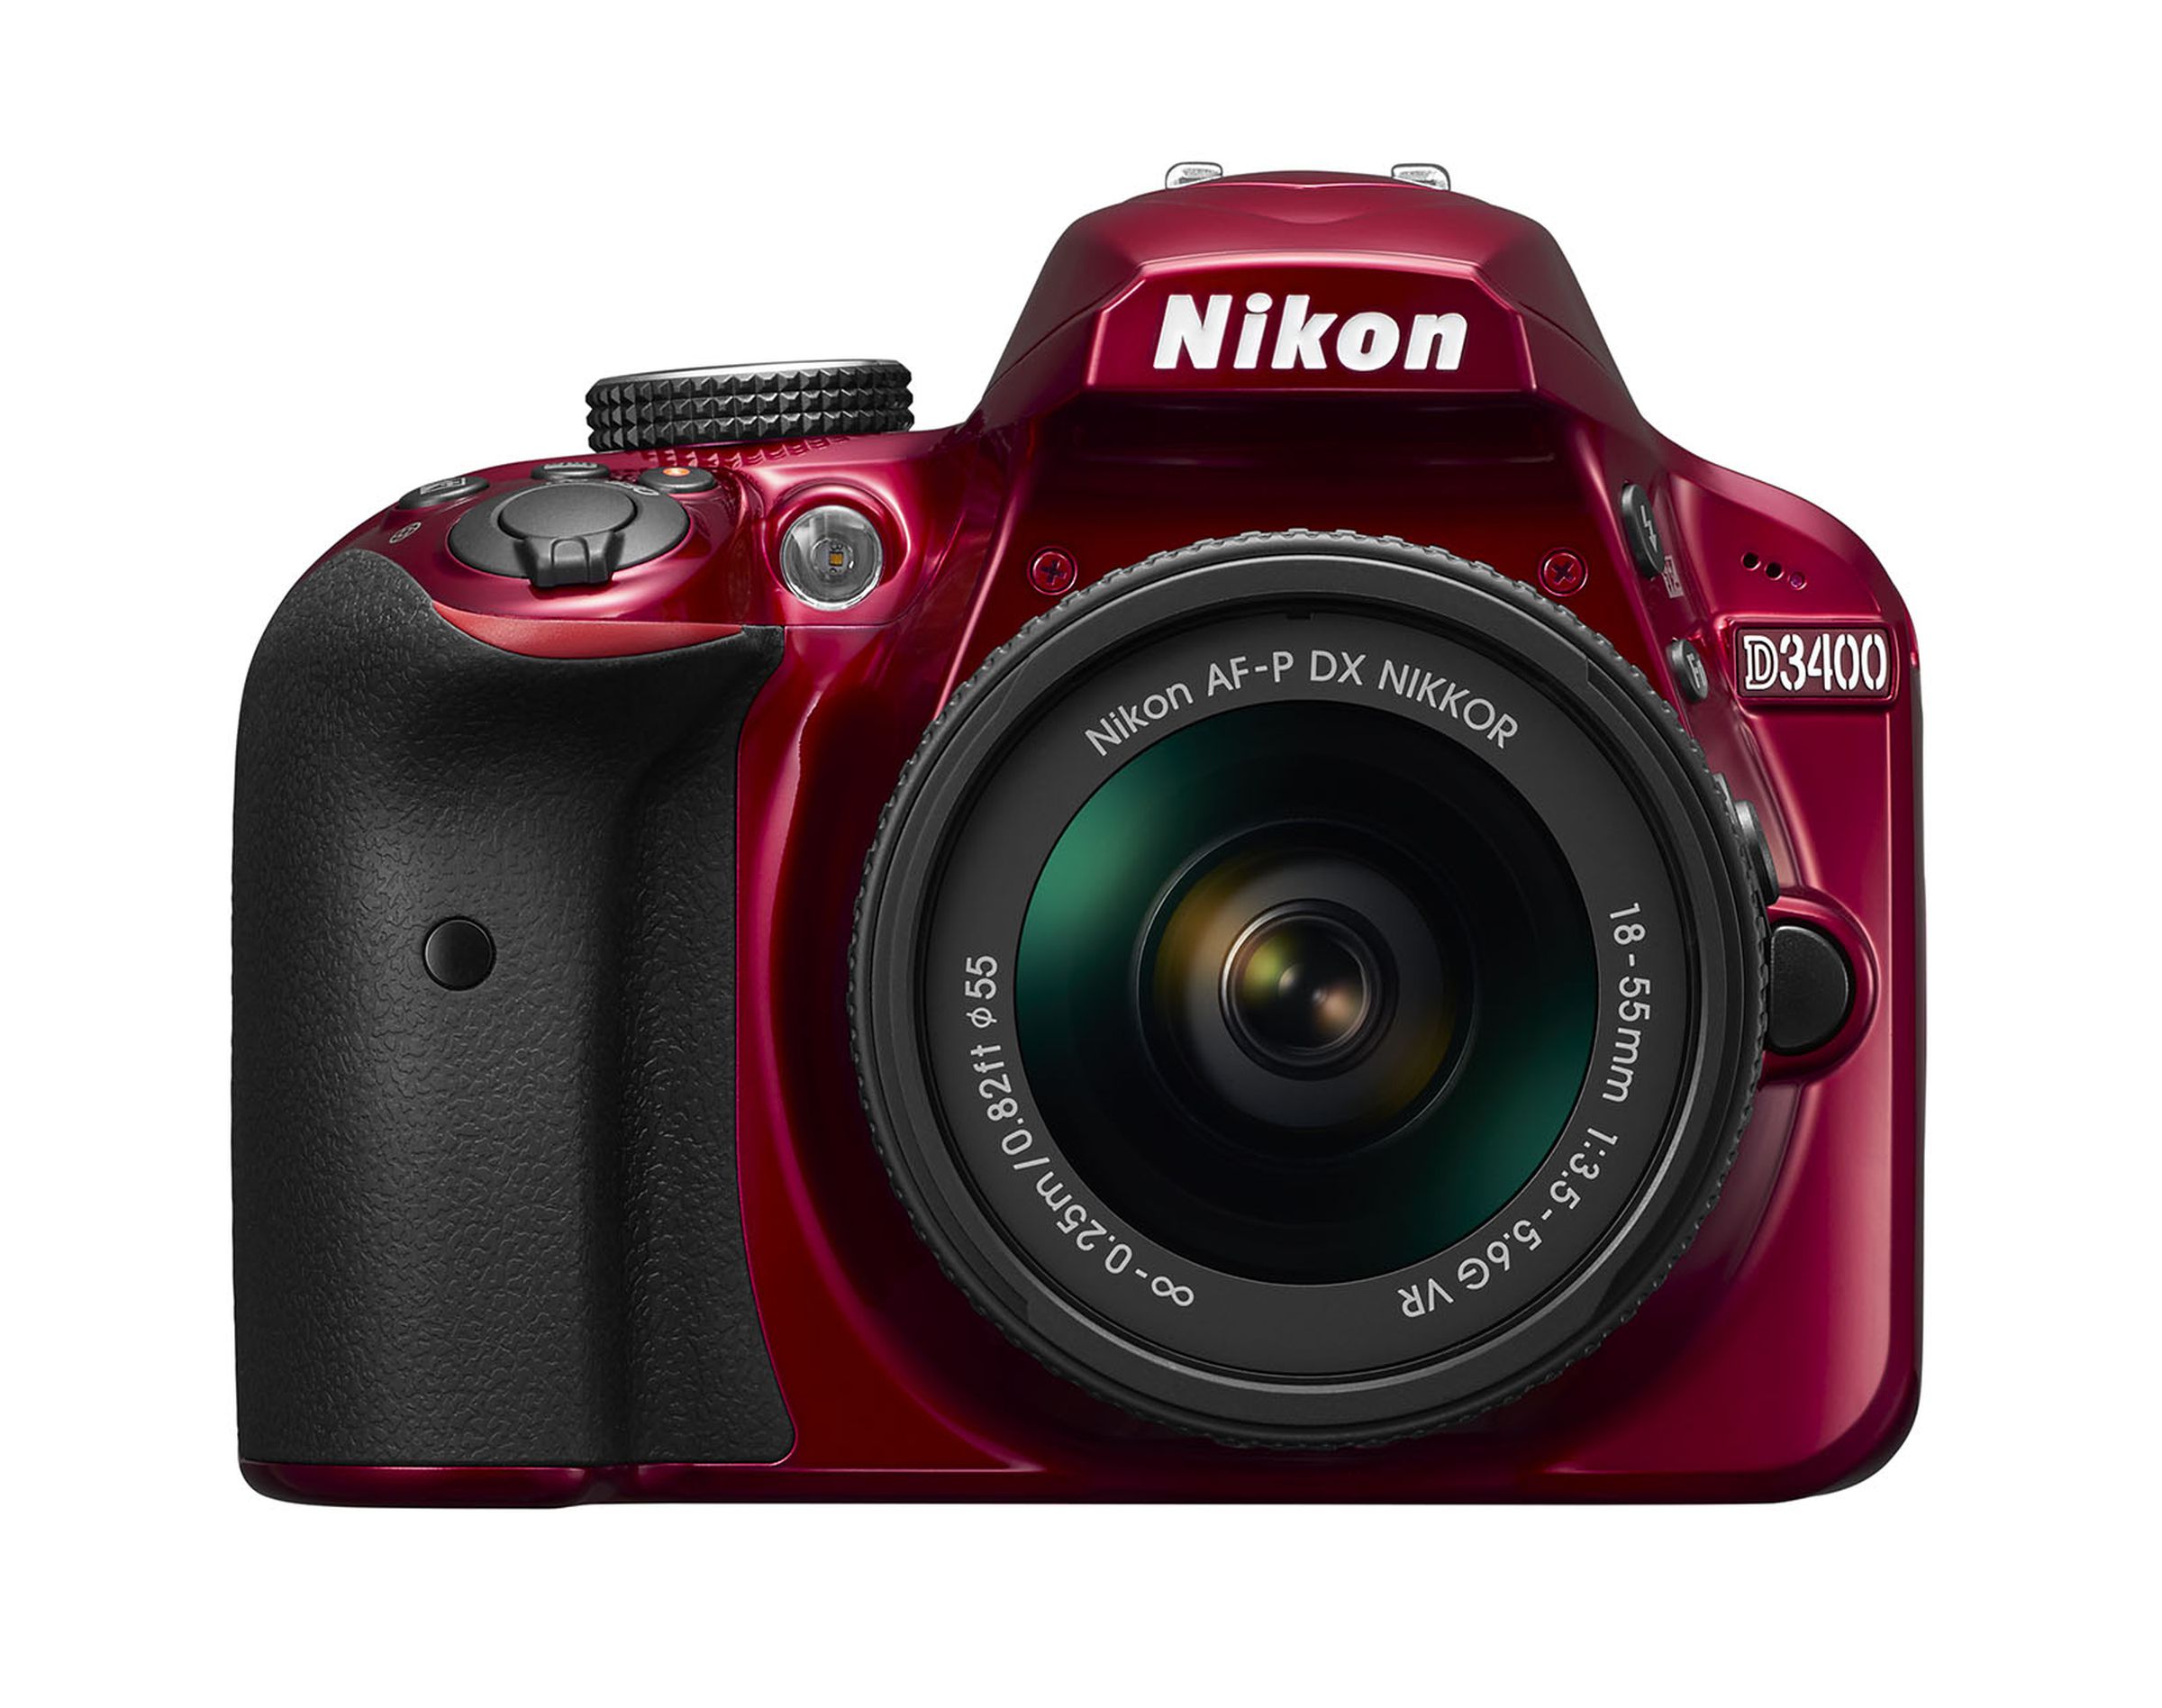 Nikon D3400 in photos